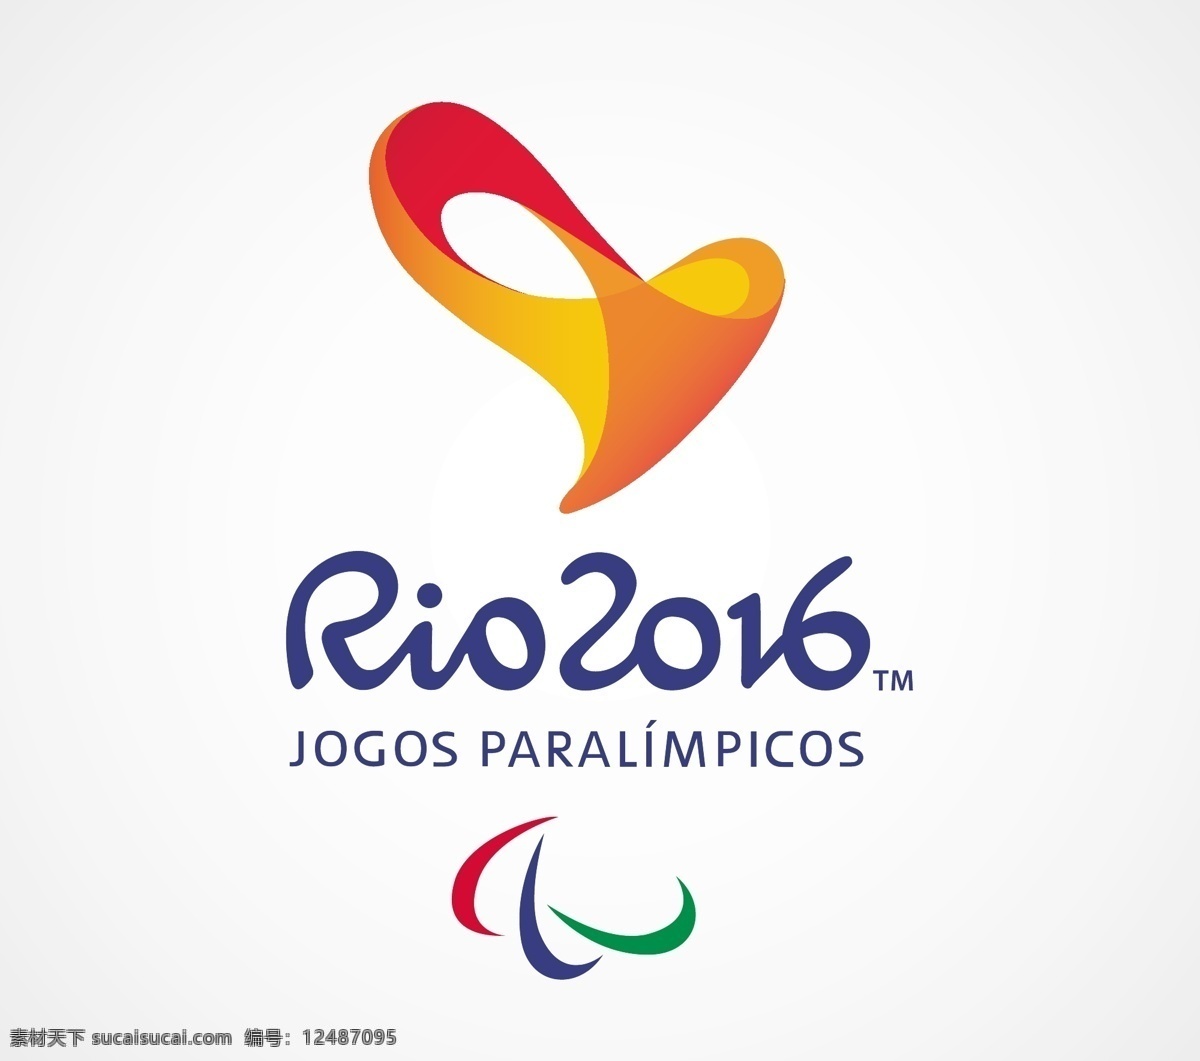 里约 2016 残奥会 力拓2016 标志 图标 奥运 游戏 柚木